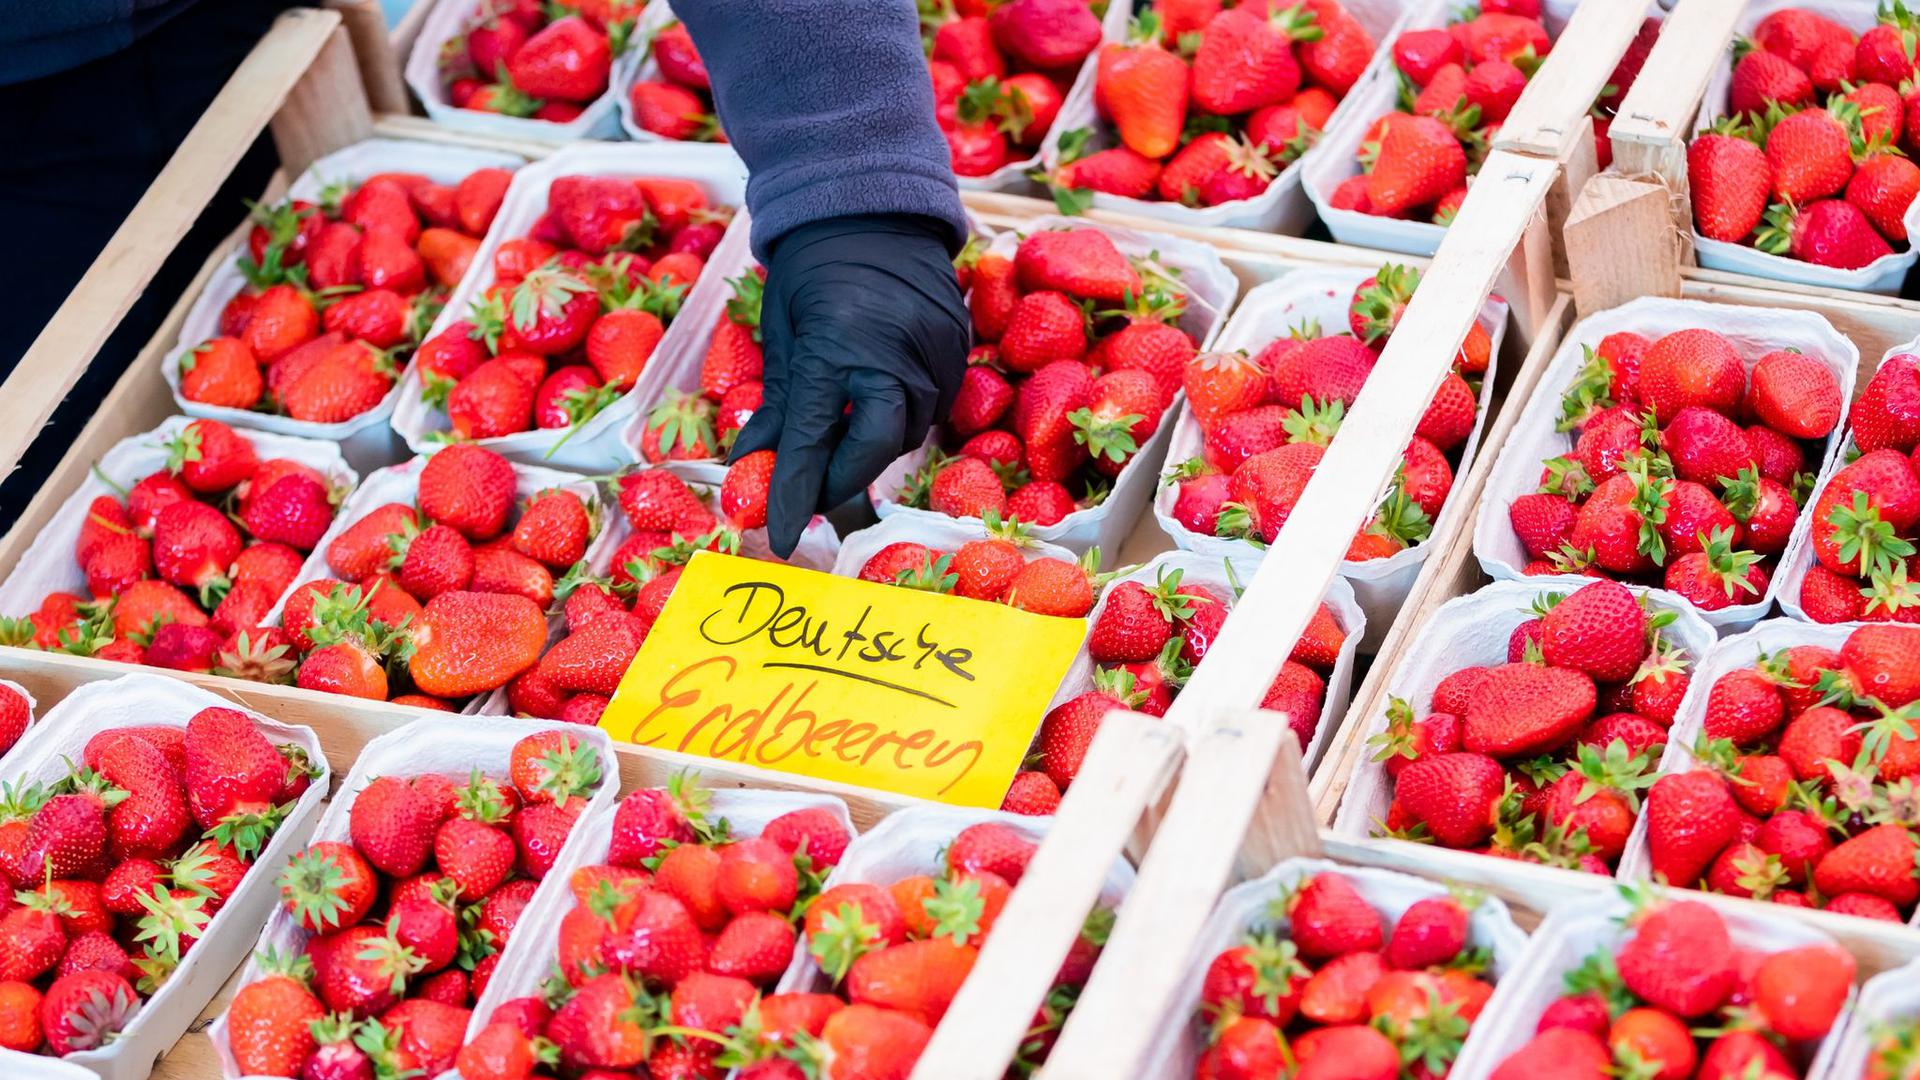 Deutsche Erdbeeren werden auf einem Wochenmarkt im Berliner Ortsteil Schöneberg angeboten. Der Verkauf von Erdbeeren läuft bei vielen Bauern in Deutschland in diesem Jahr nicht rund.